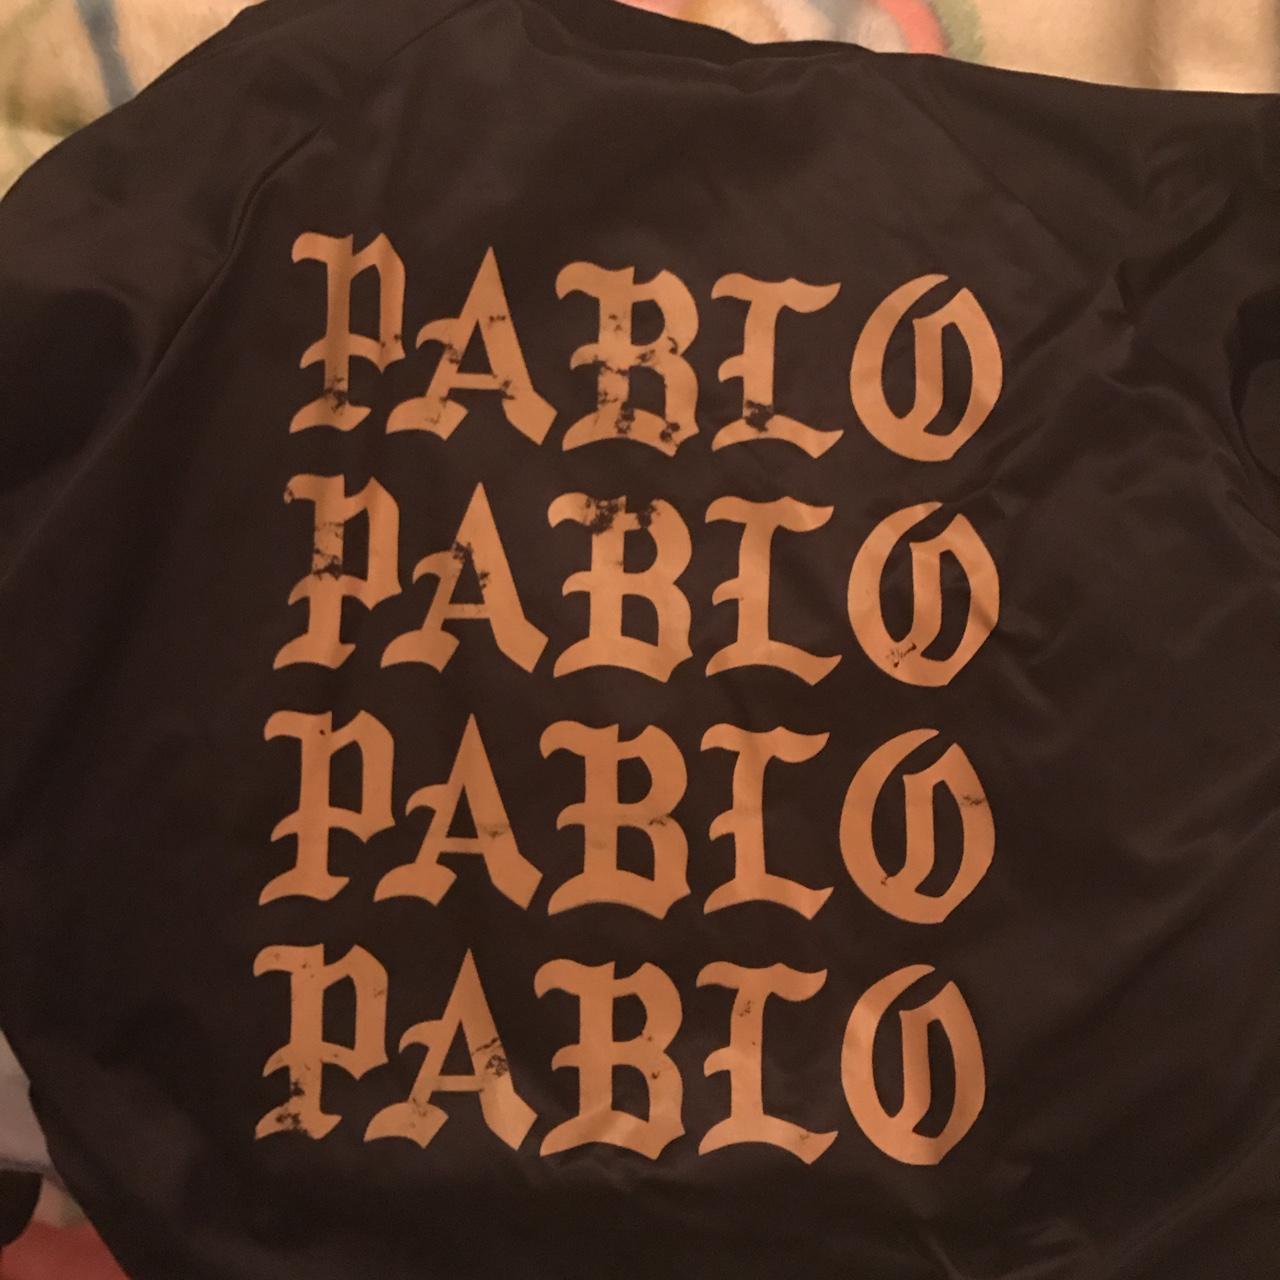 Pablo Bomber Jacket From Kanye Pop Up Shop Used Depop